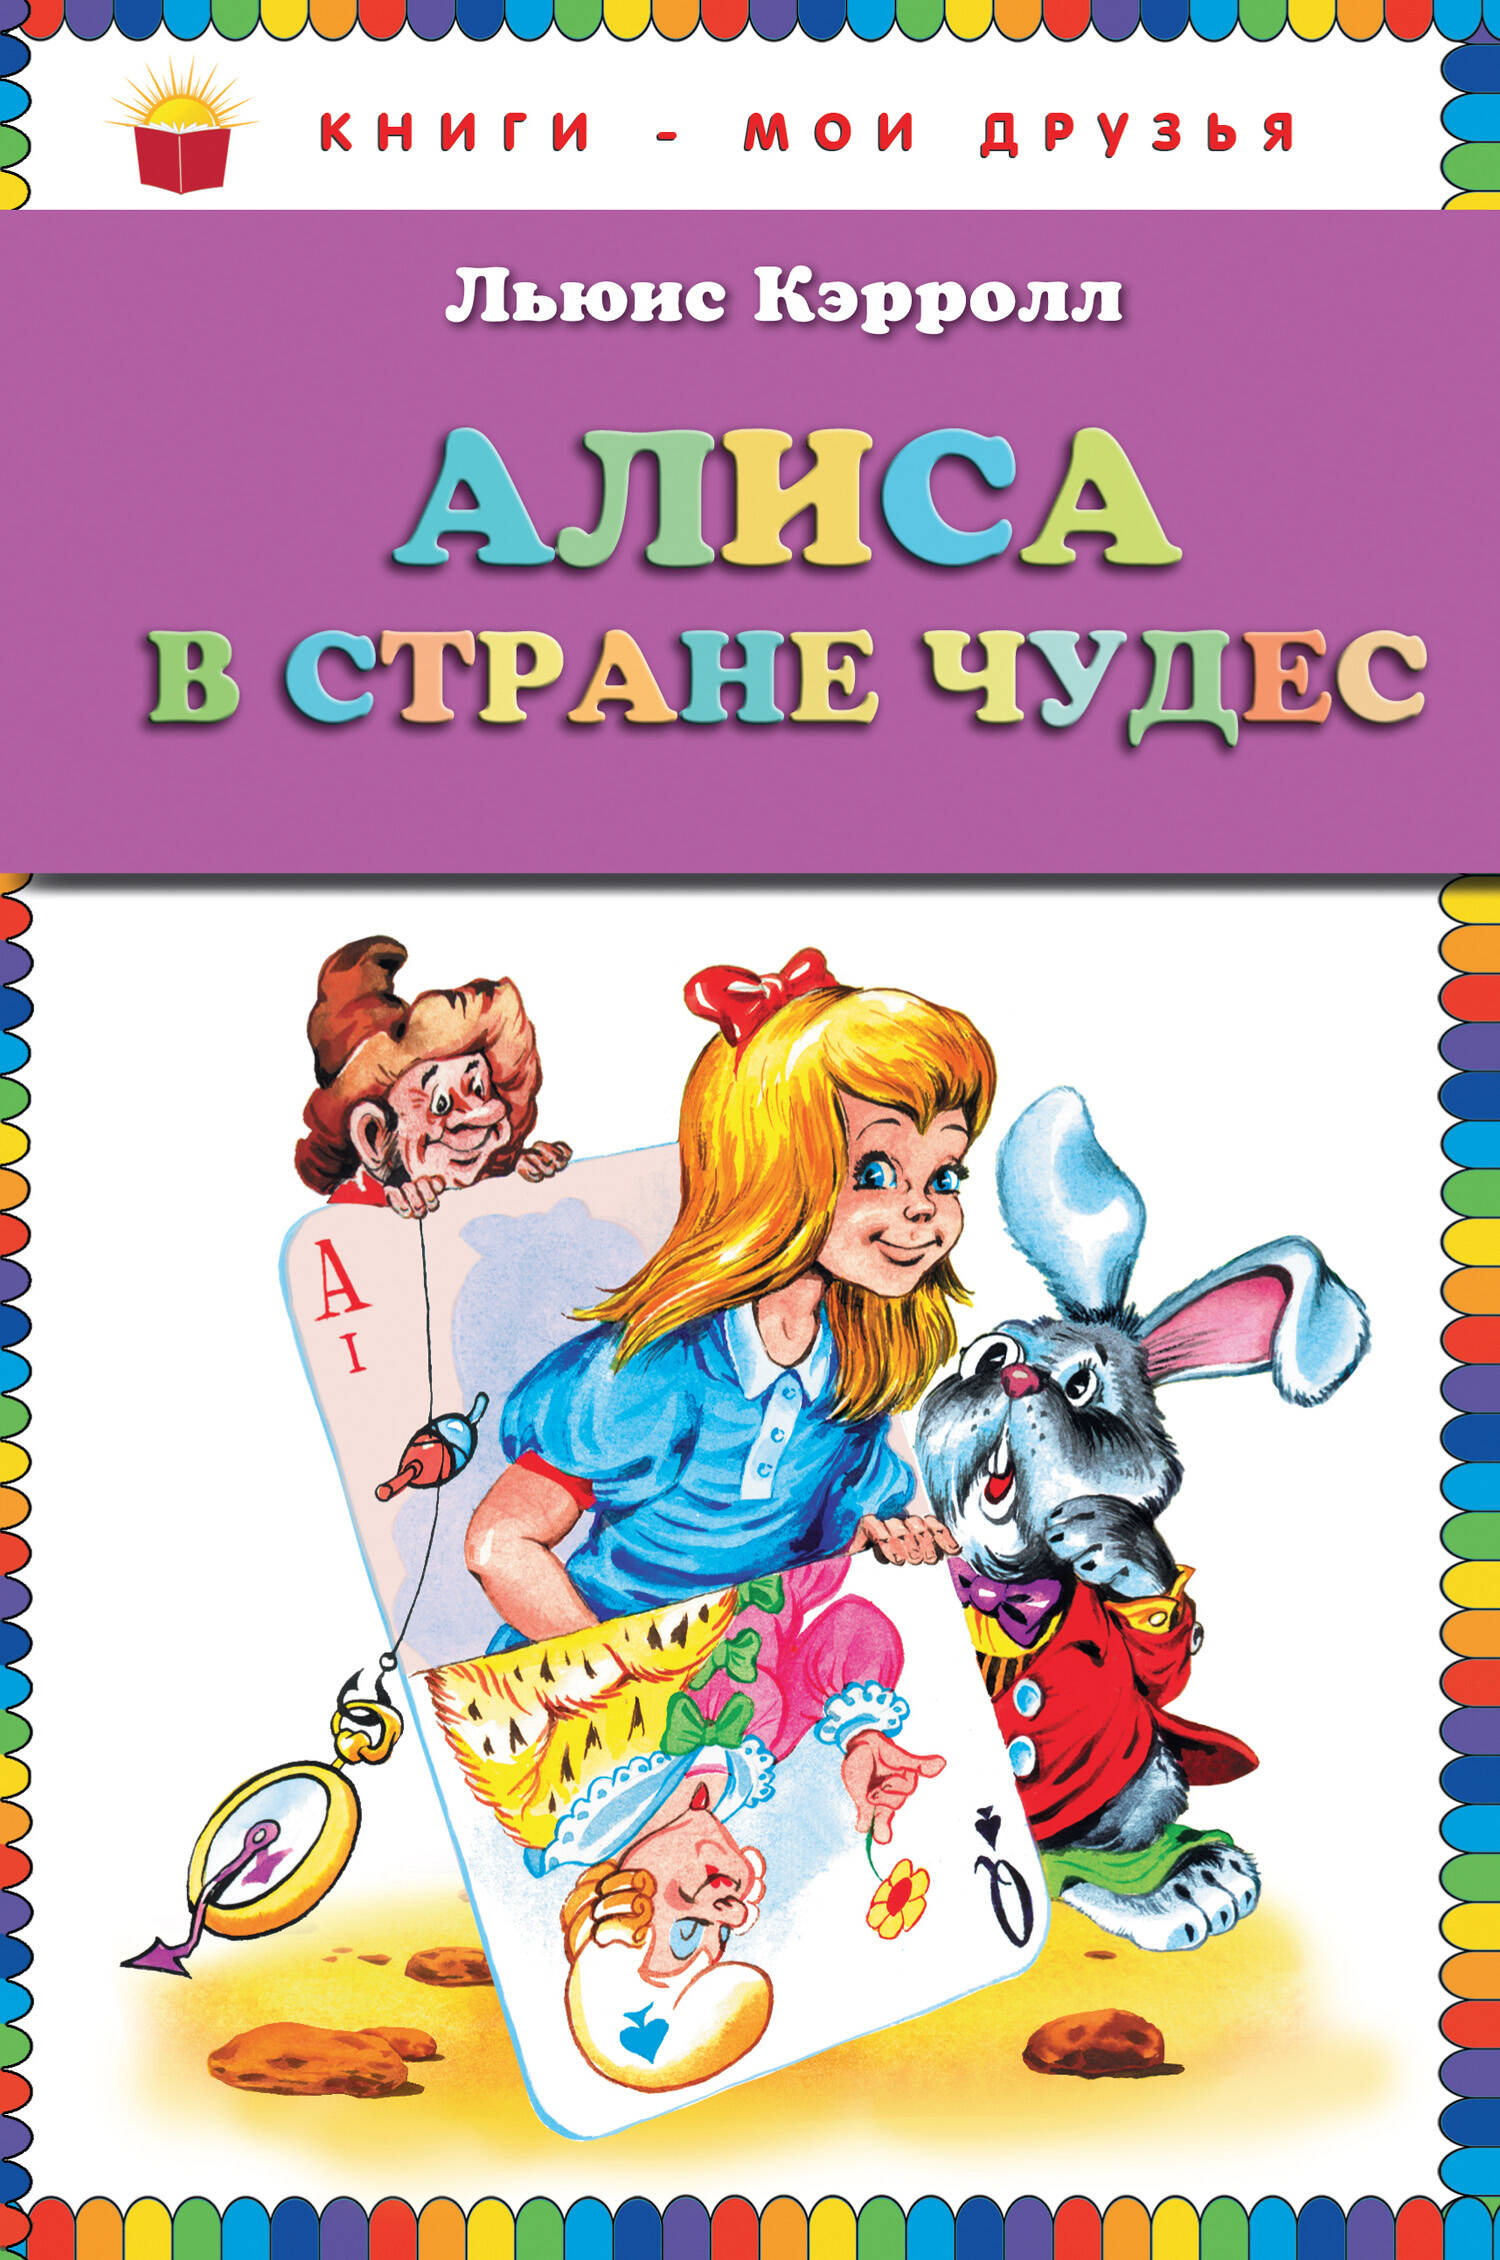 Алиса в стране чудес (ст. изд.)